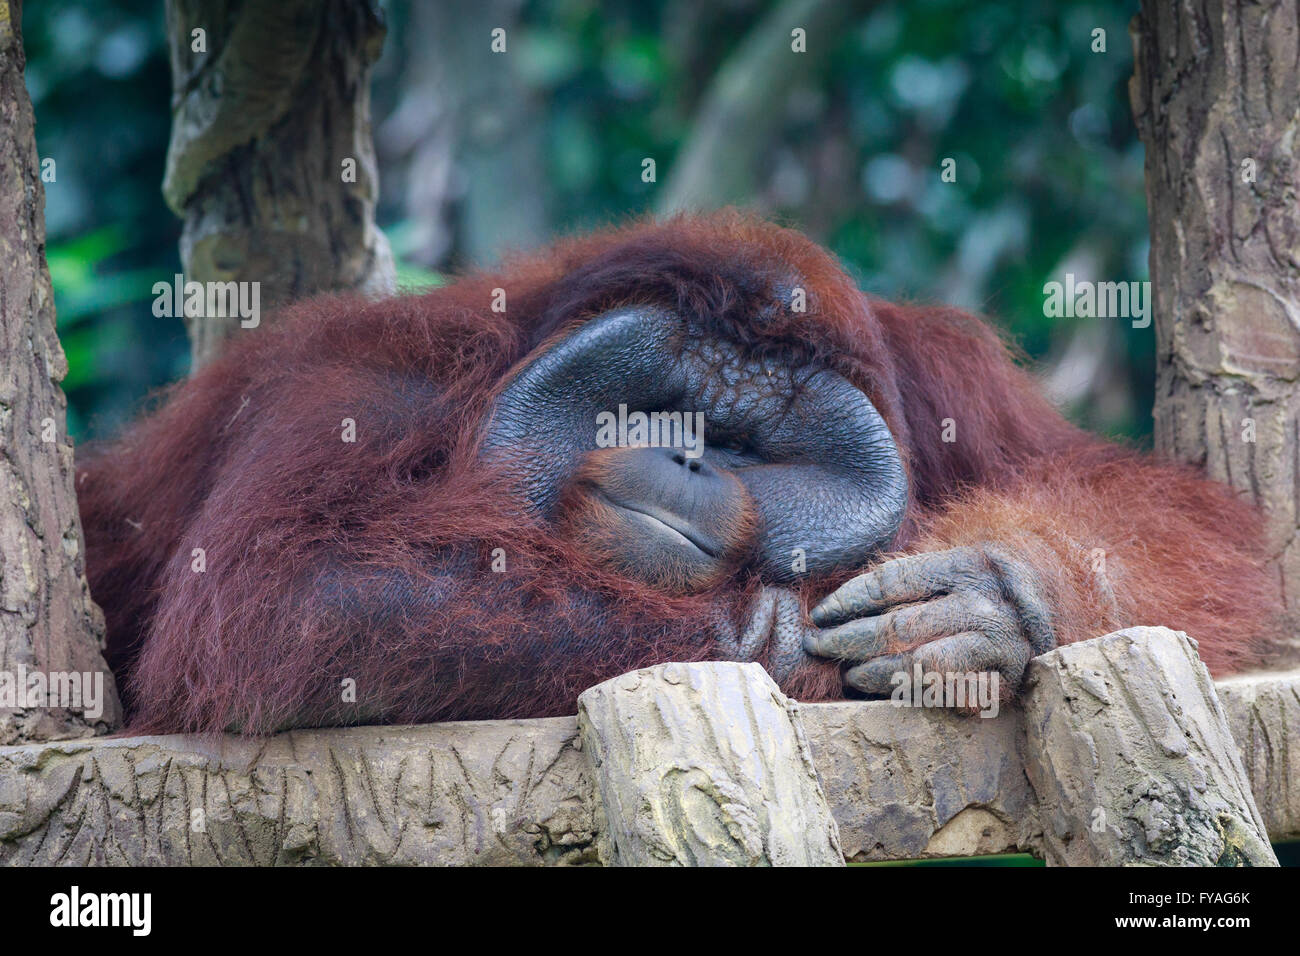 Orangután posando delante de la cámara. Los orangutanes son exclusivamente las dos especies asiáticas de extant grandes simios. Foto de stock